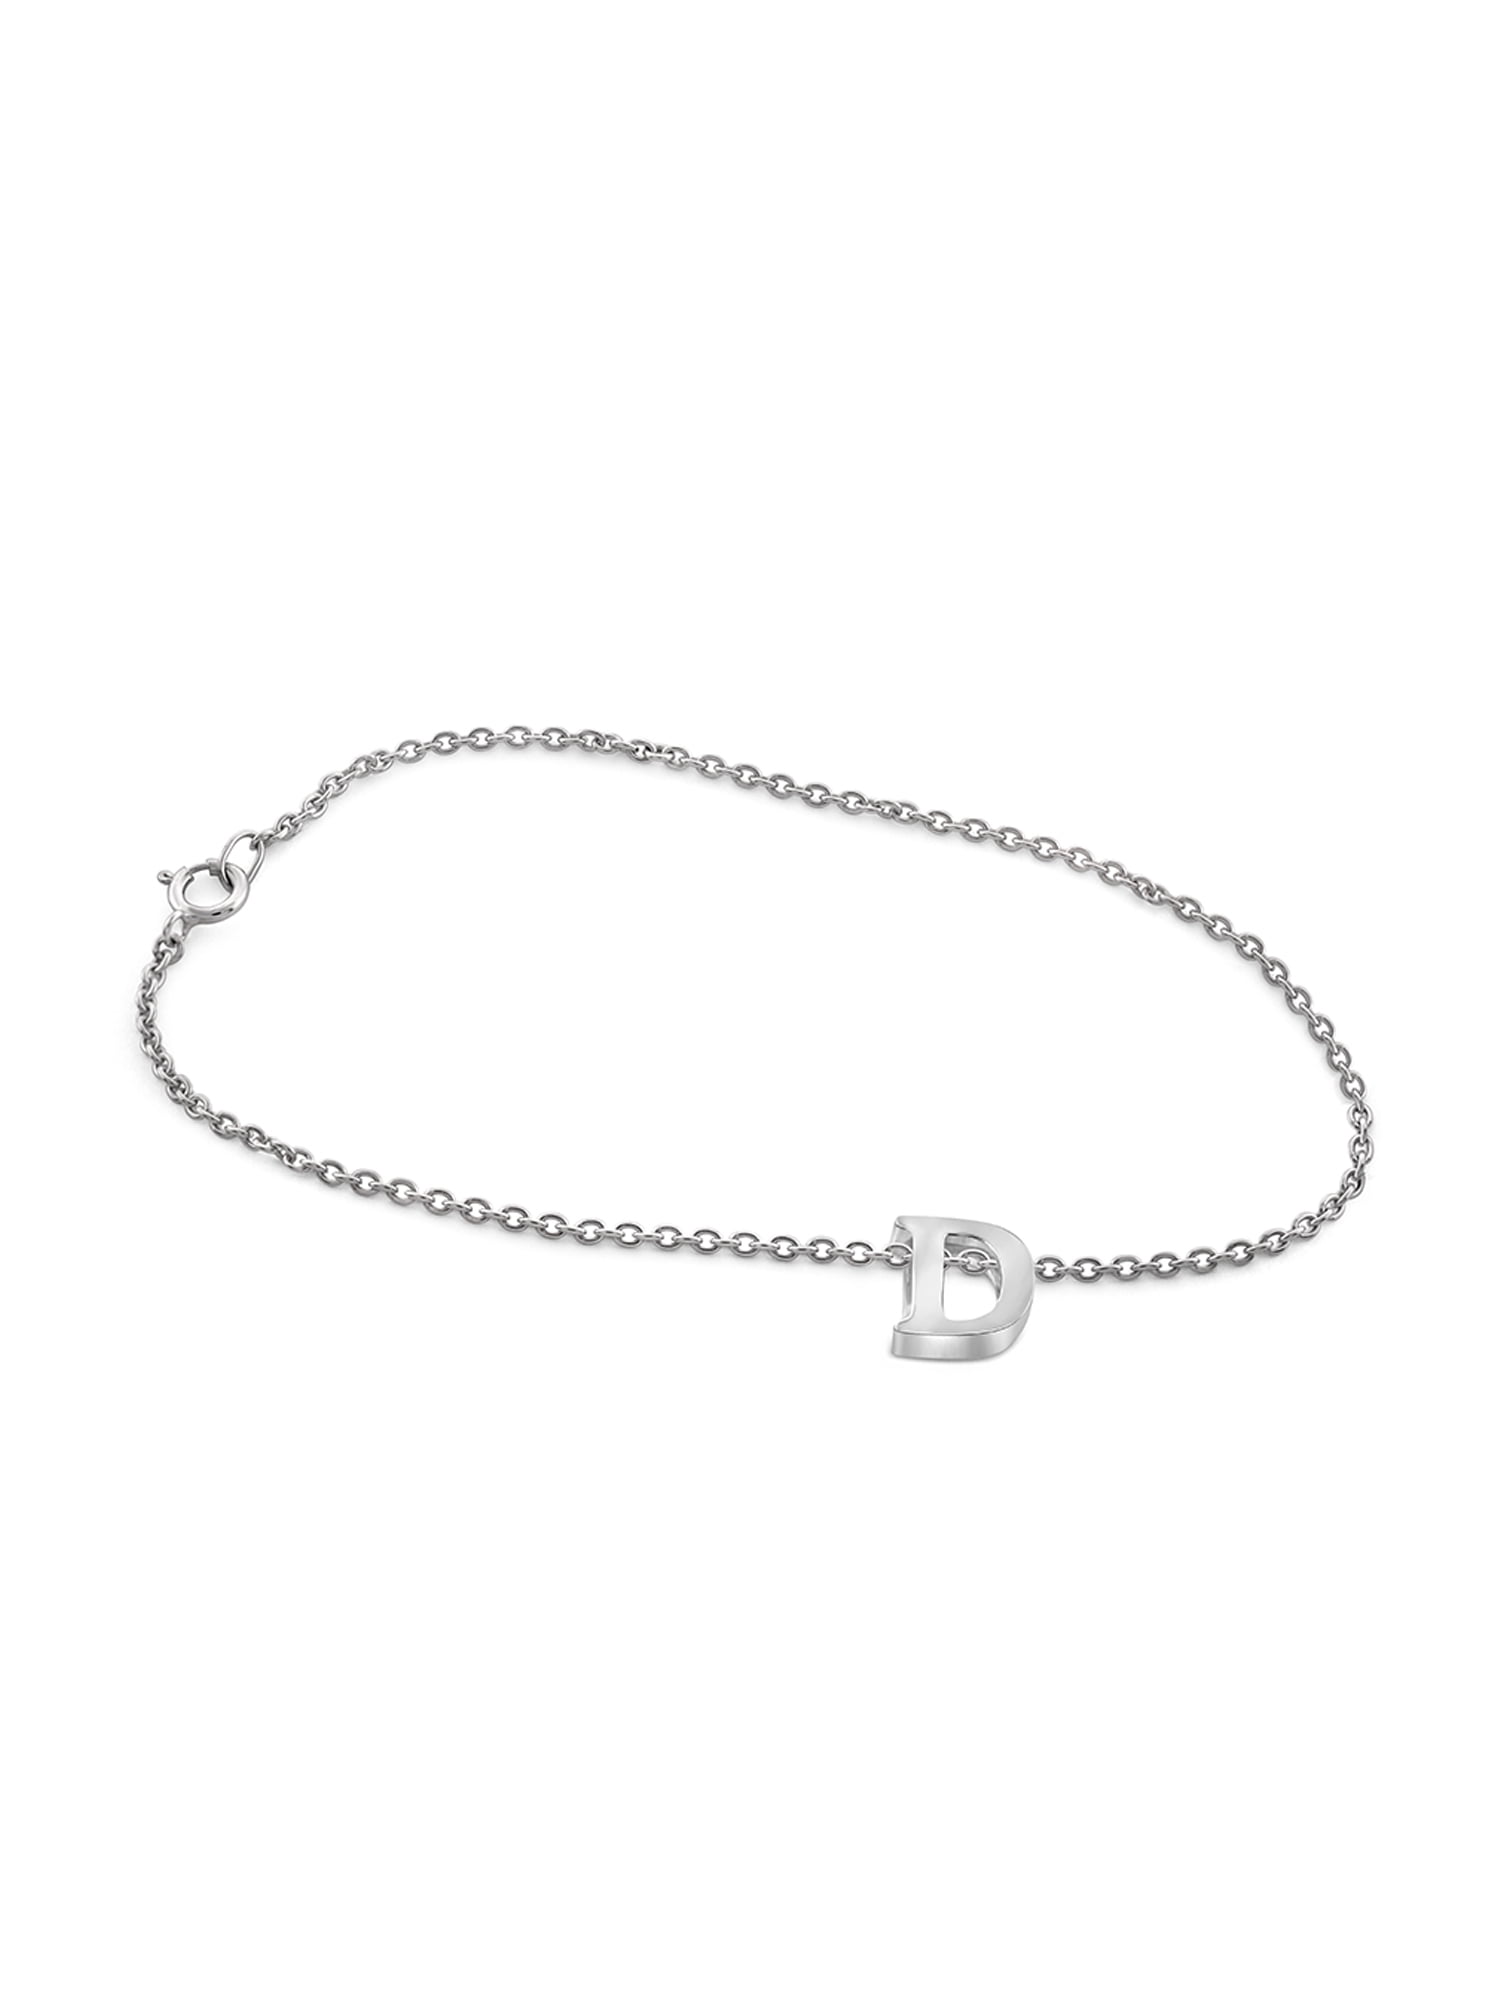 Buy Personalized Bracelets | Custom Bracelets For Women | STAC Fine  Jewellery